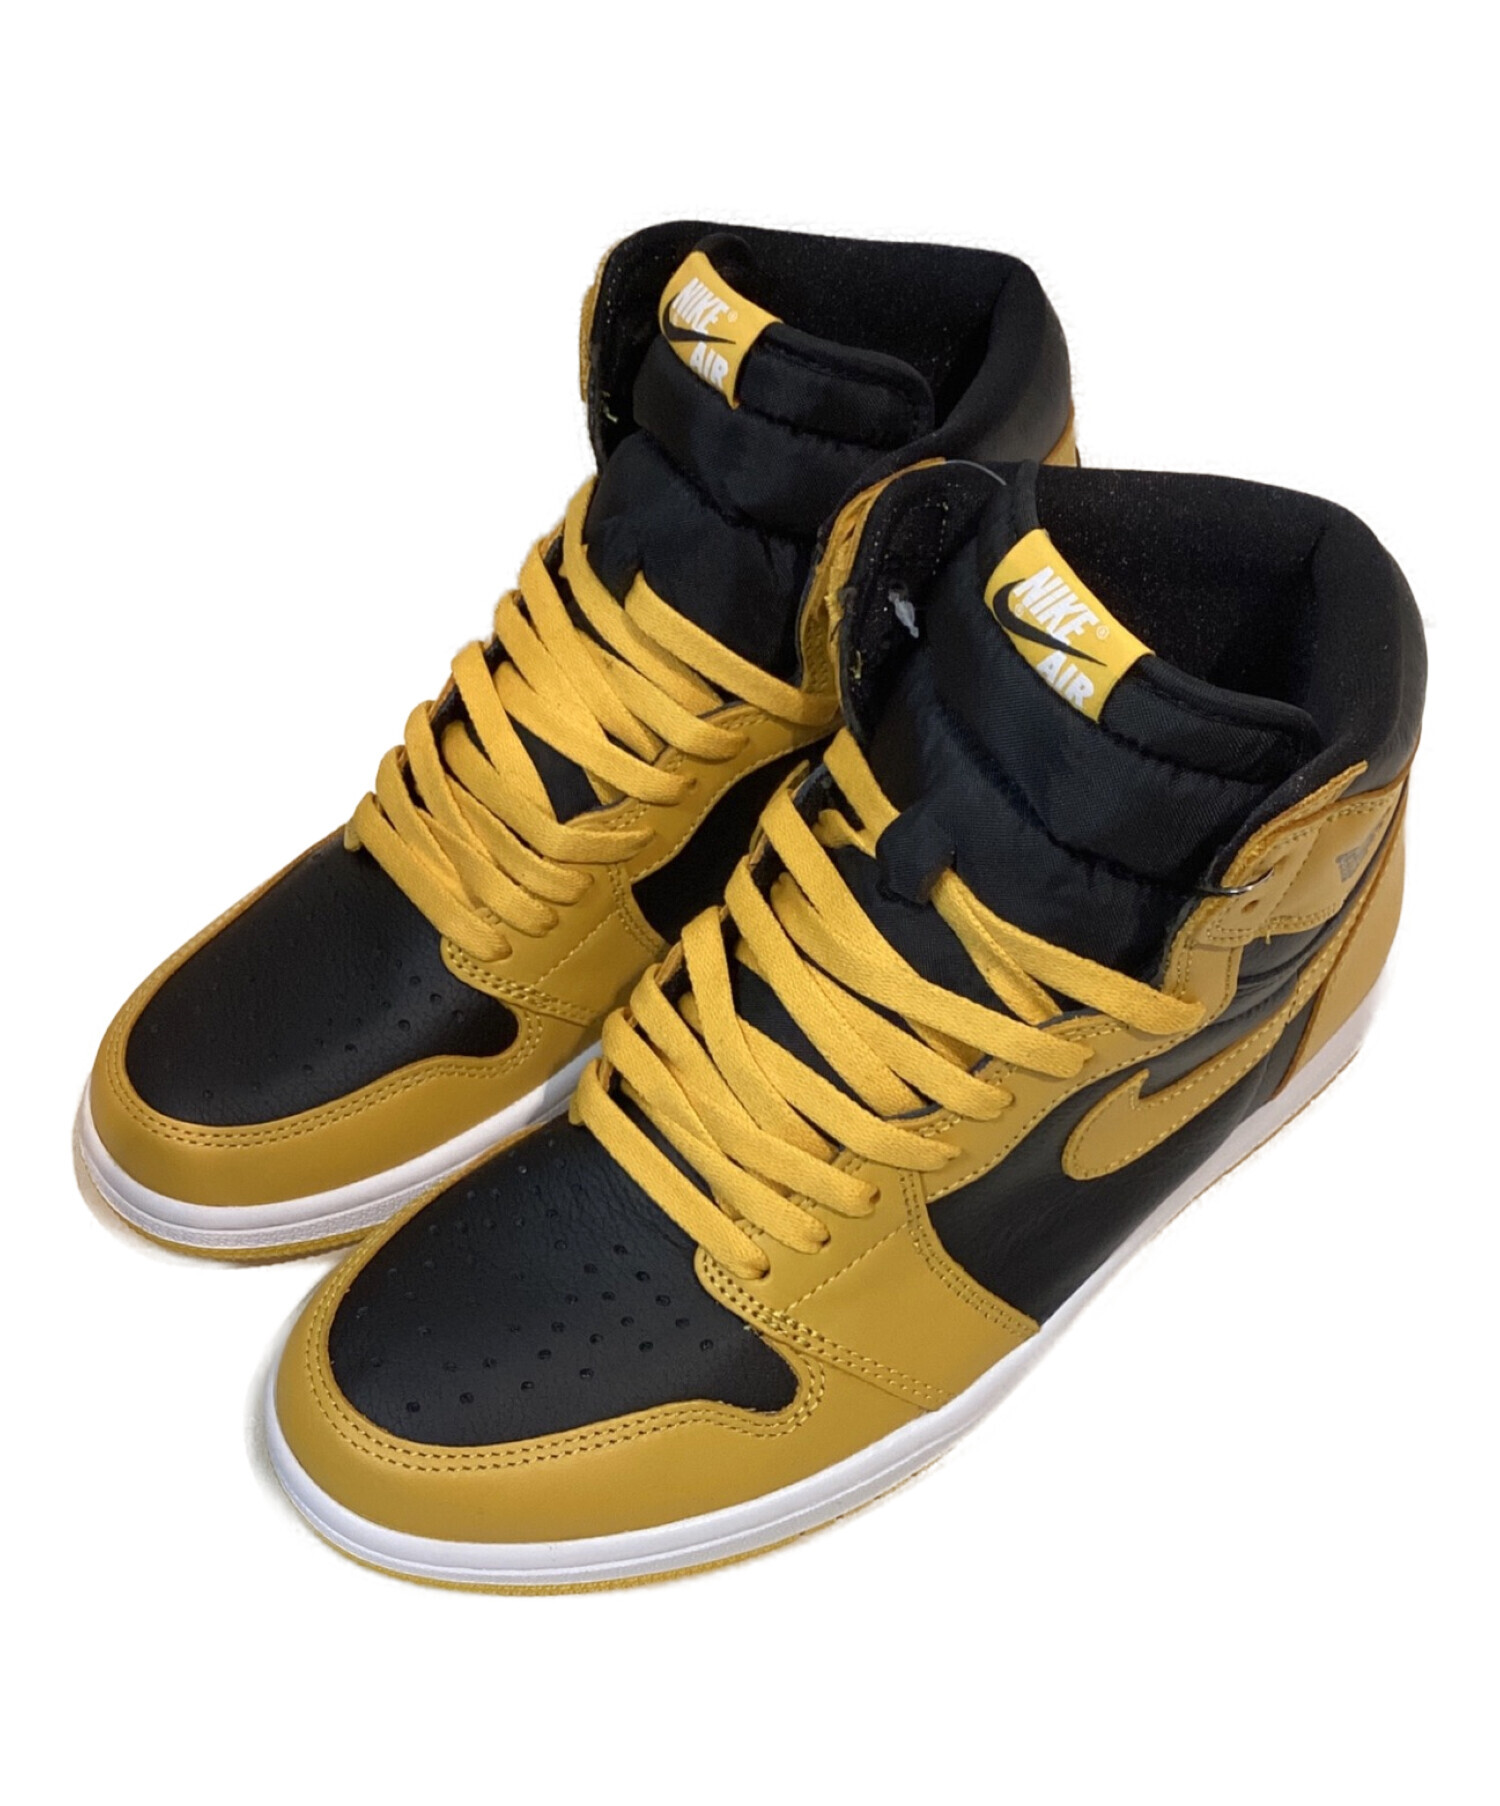 Nike Air Jordan1 High OG "Pollen" 新品未使用